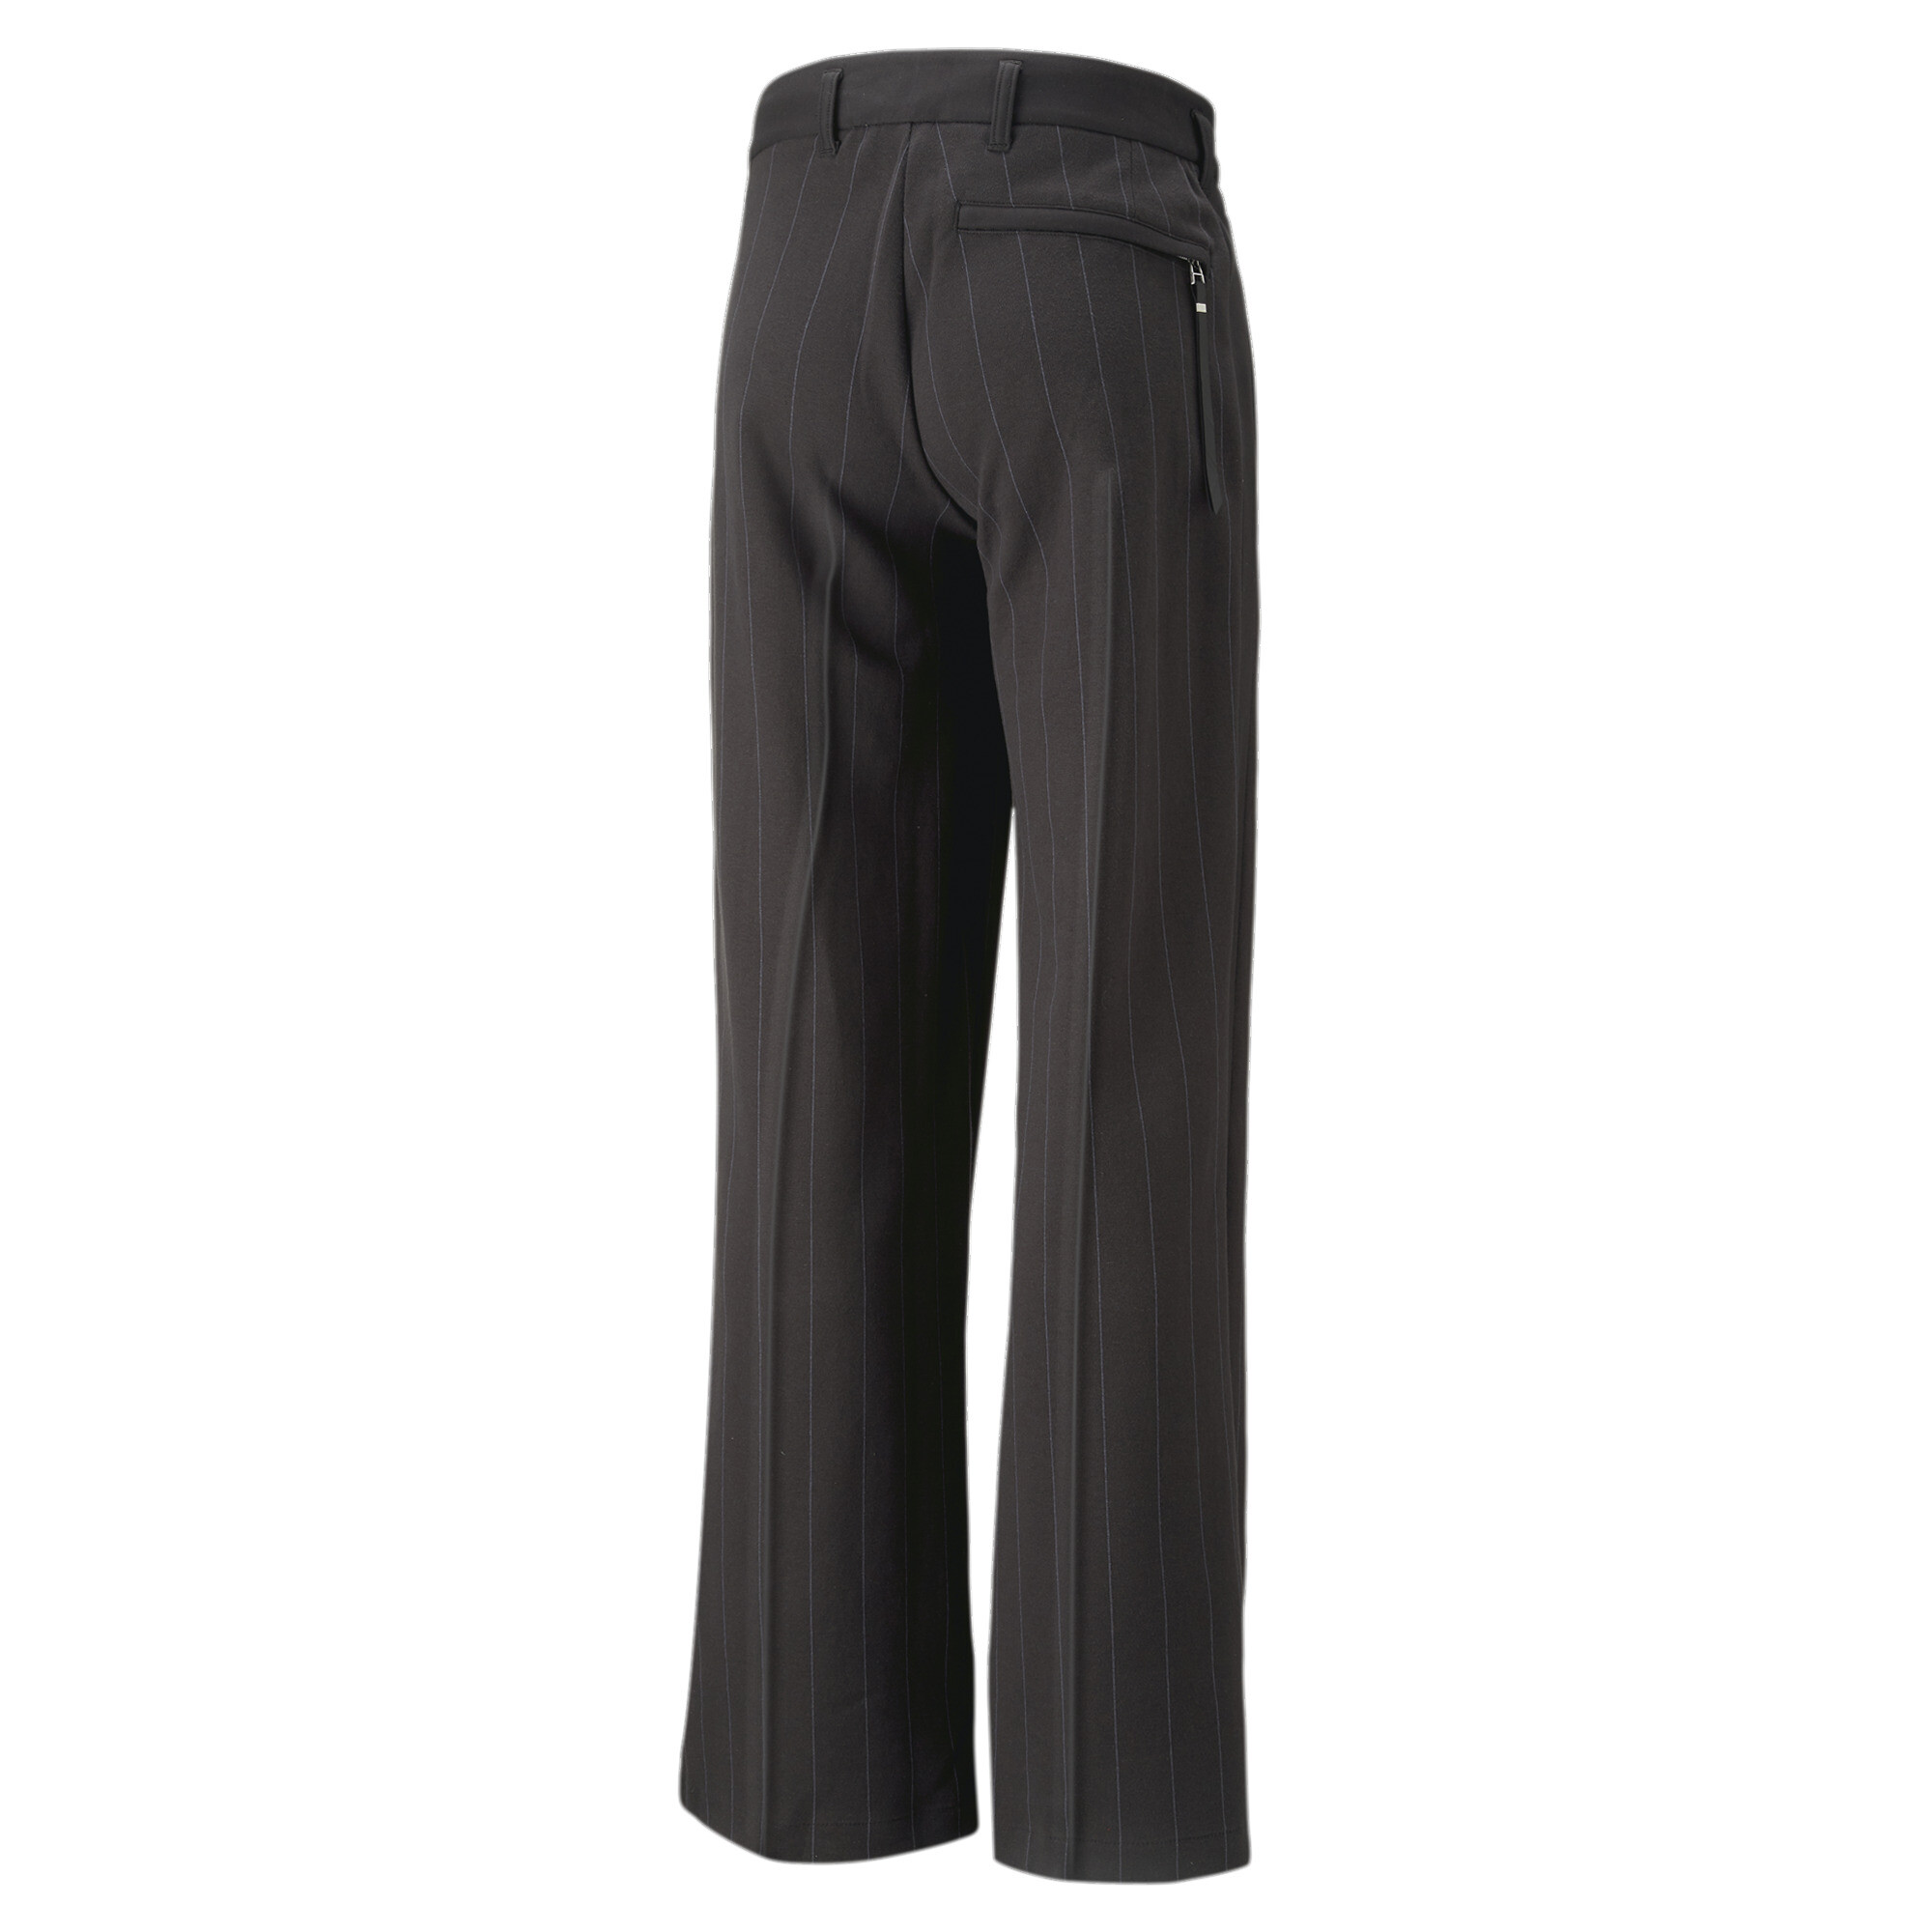 Men's PUMA LUXE SPORT T7 Pleated Pants In Black, Size EU 32